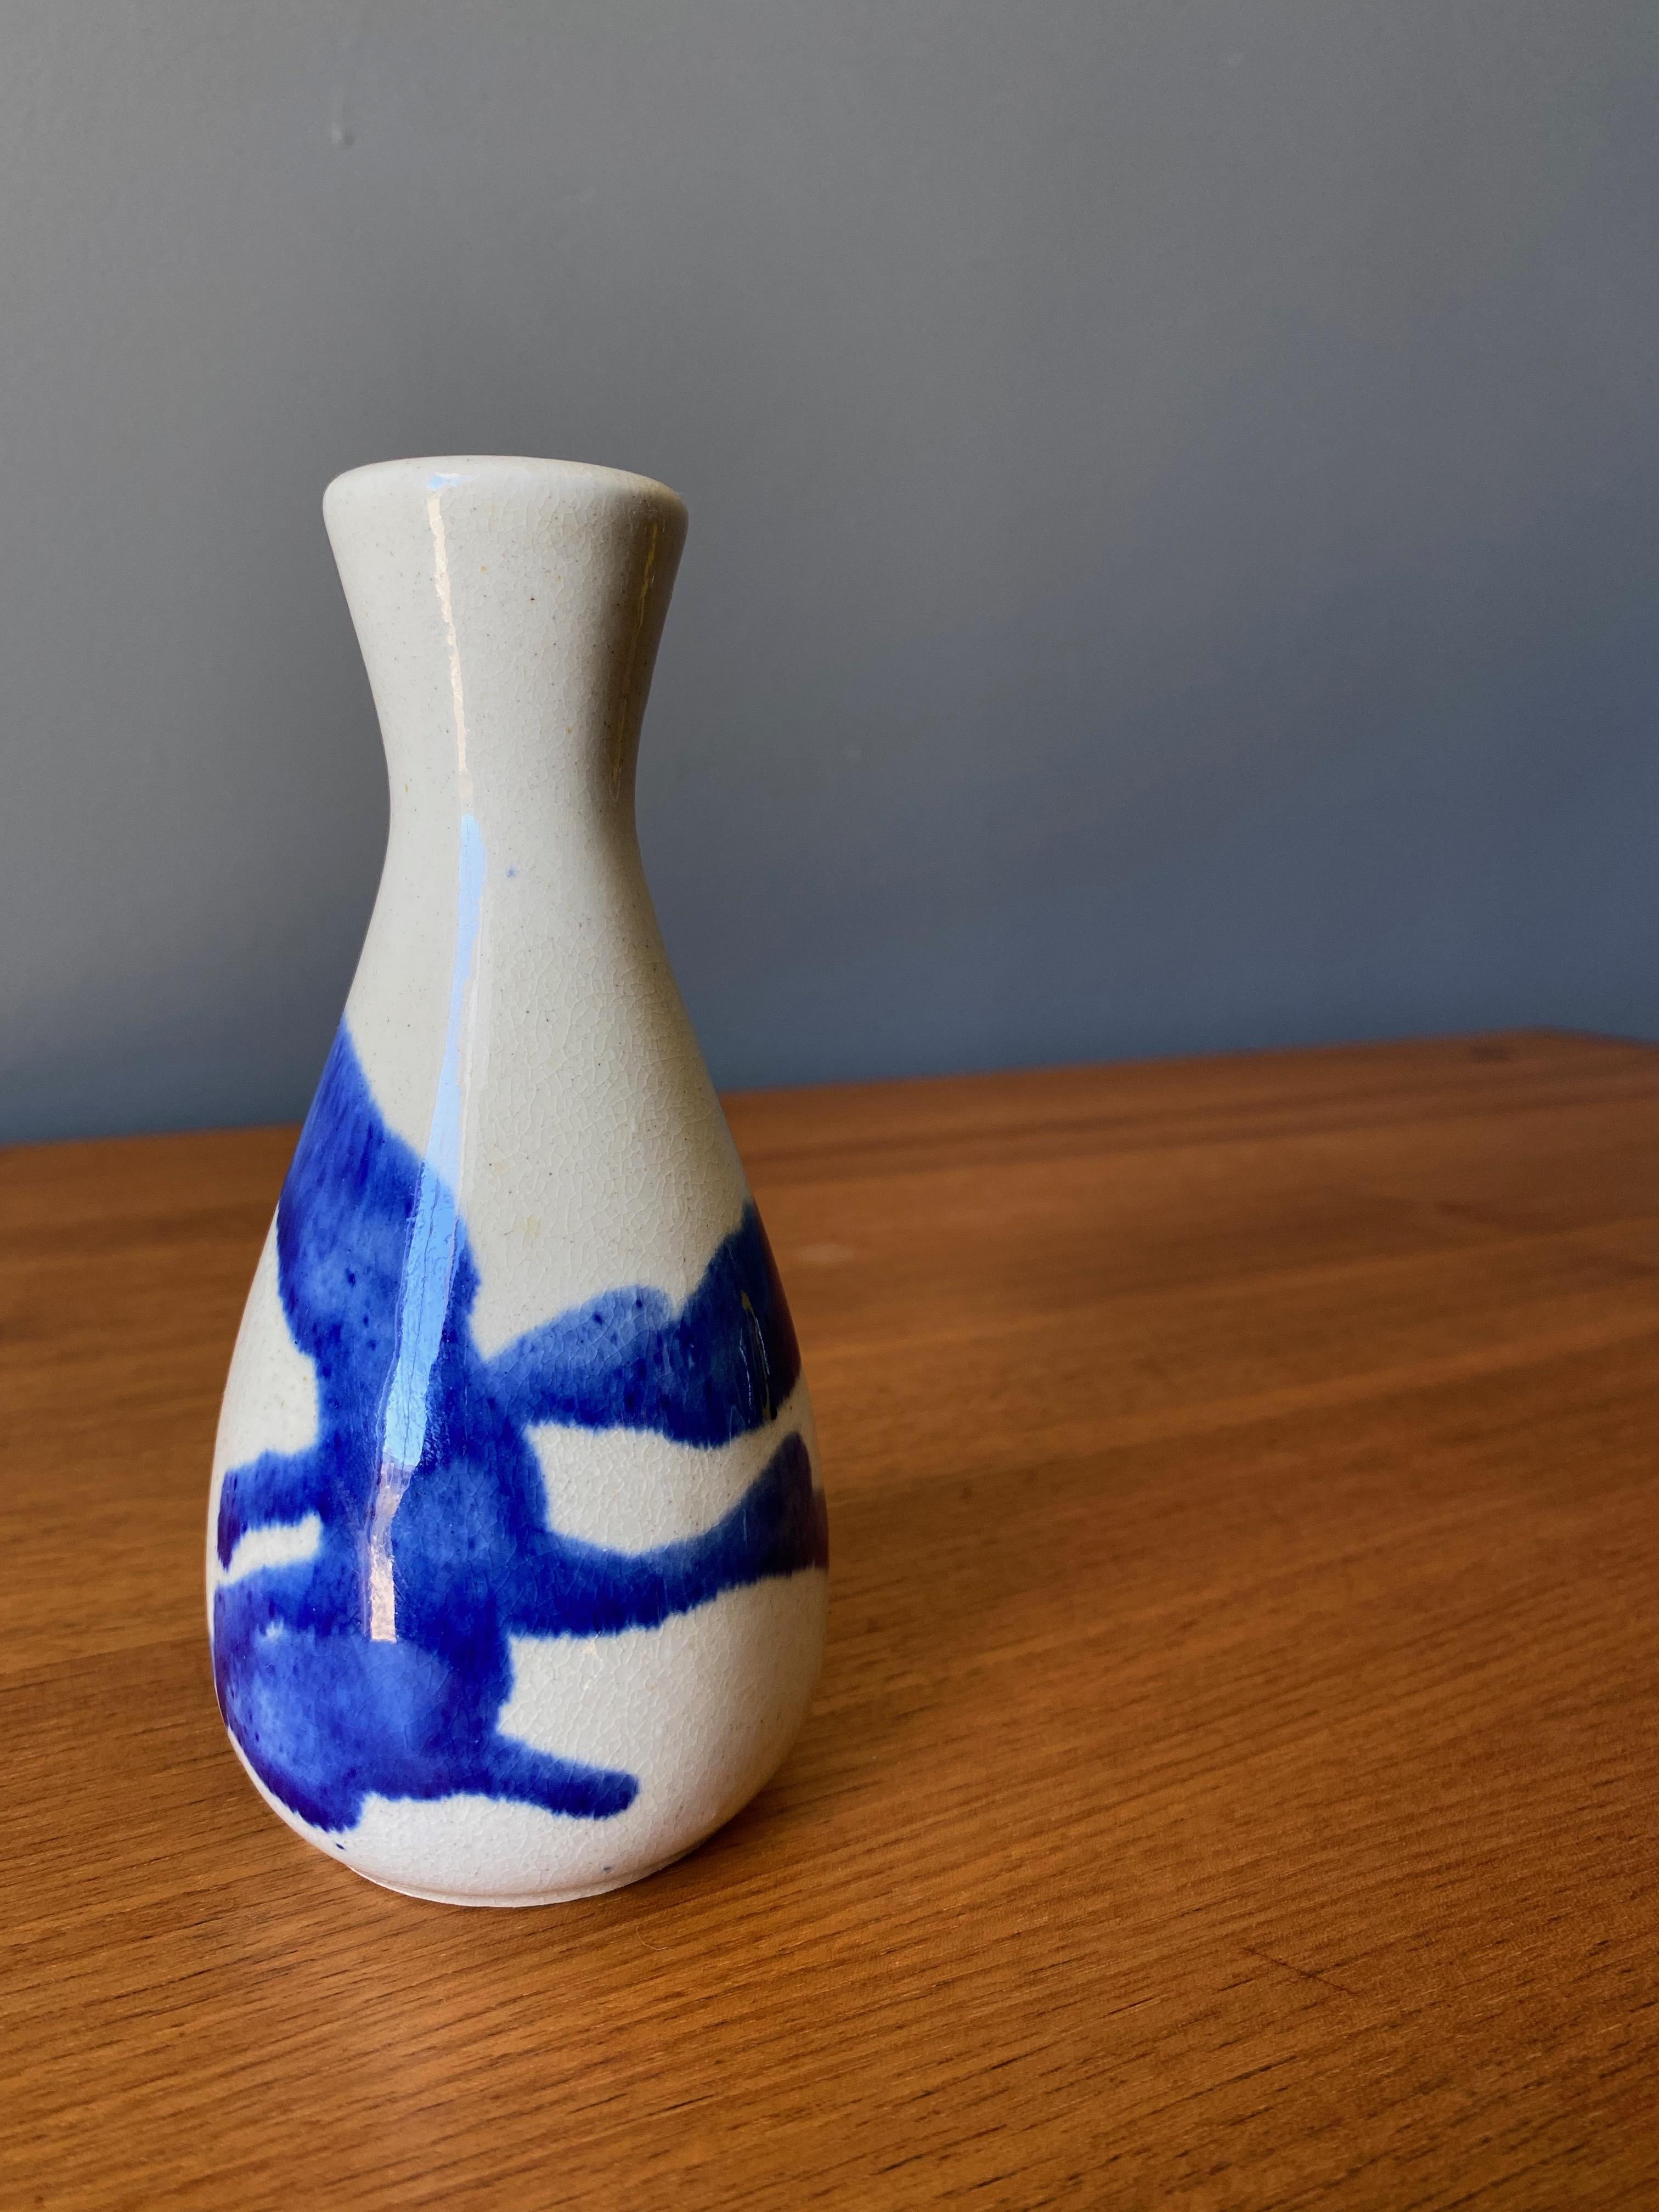 Vintage ceramic vase in blue and cream glaze, Circa 1970s.